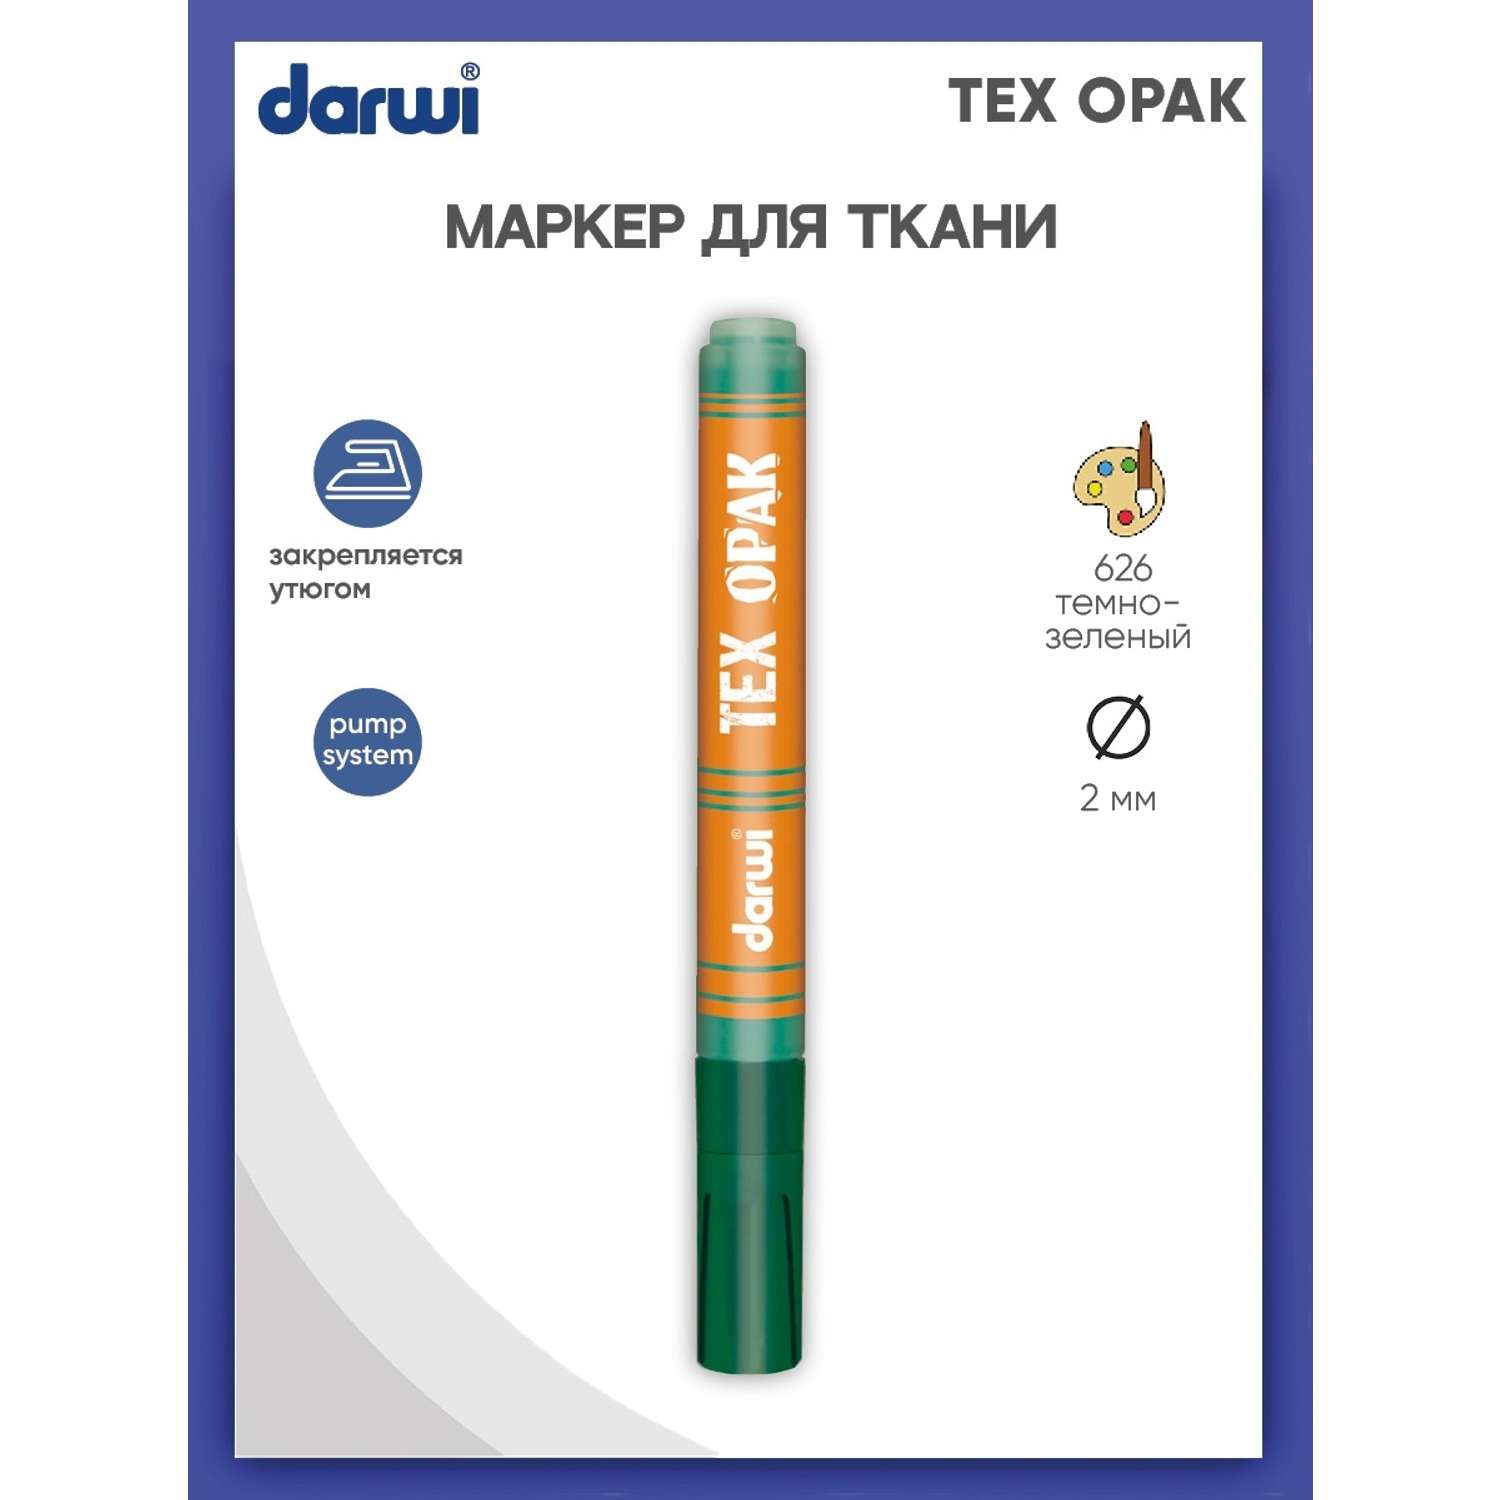 Маркер Darwi для ткани TEX OPAK DA0160013 2 мм укрывистый 626 темно - зеленый - фото 1